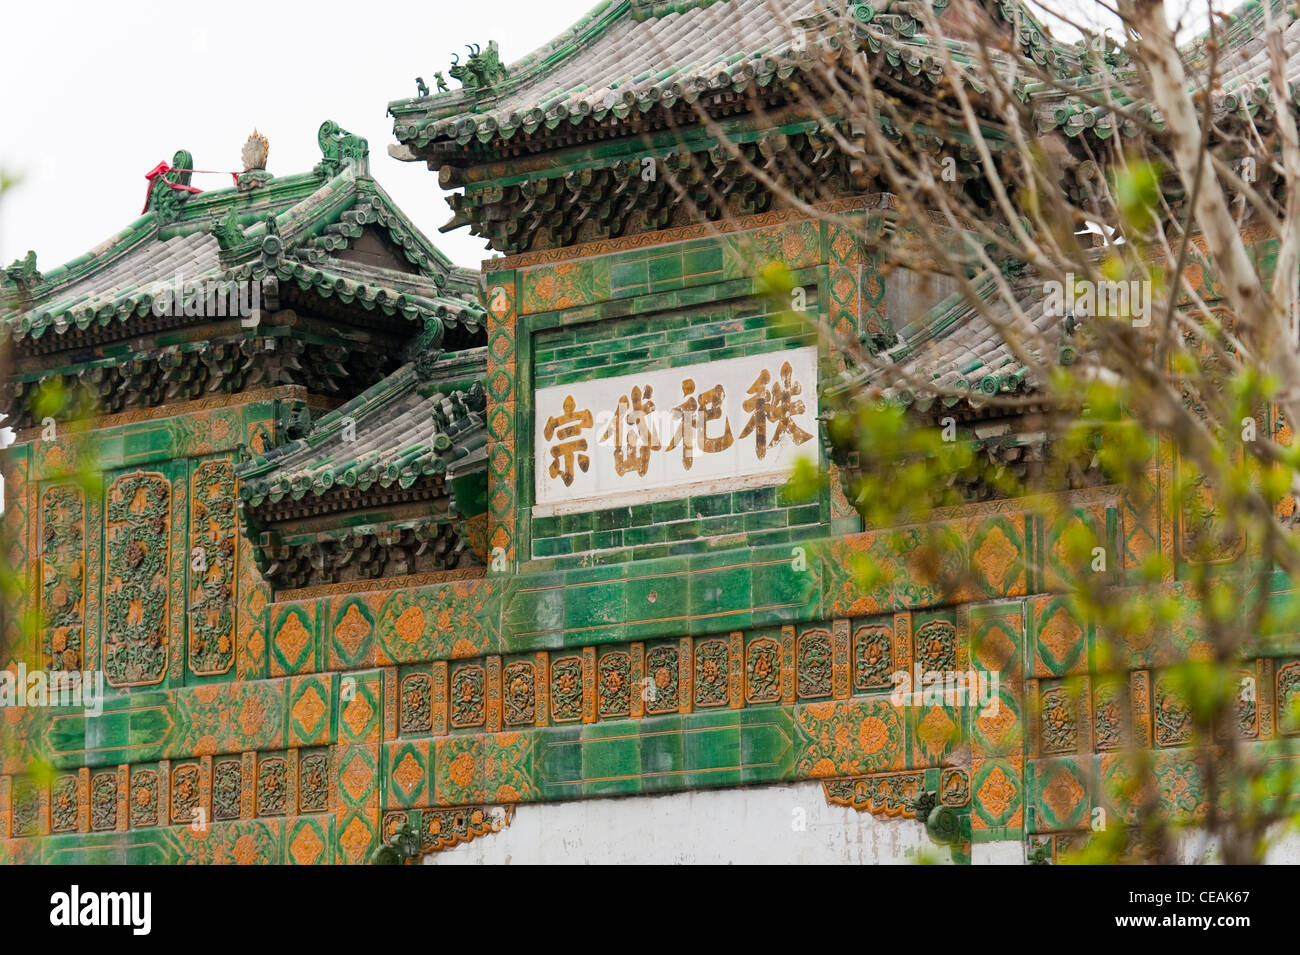 La plus ancienne porte de la ville de Beijing, Chaoyang District, Beijing, Chine, Asie. Banque D'Images